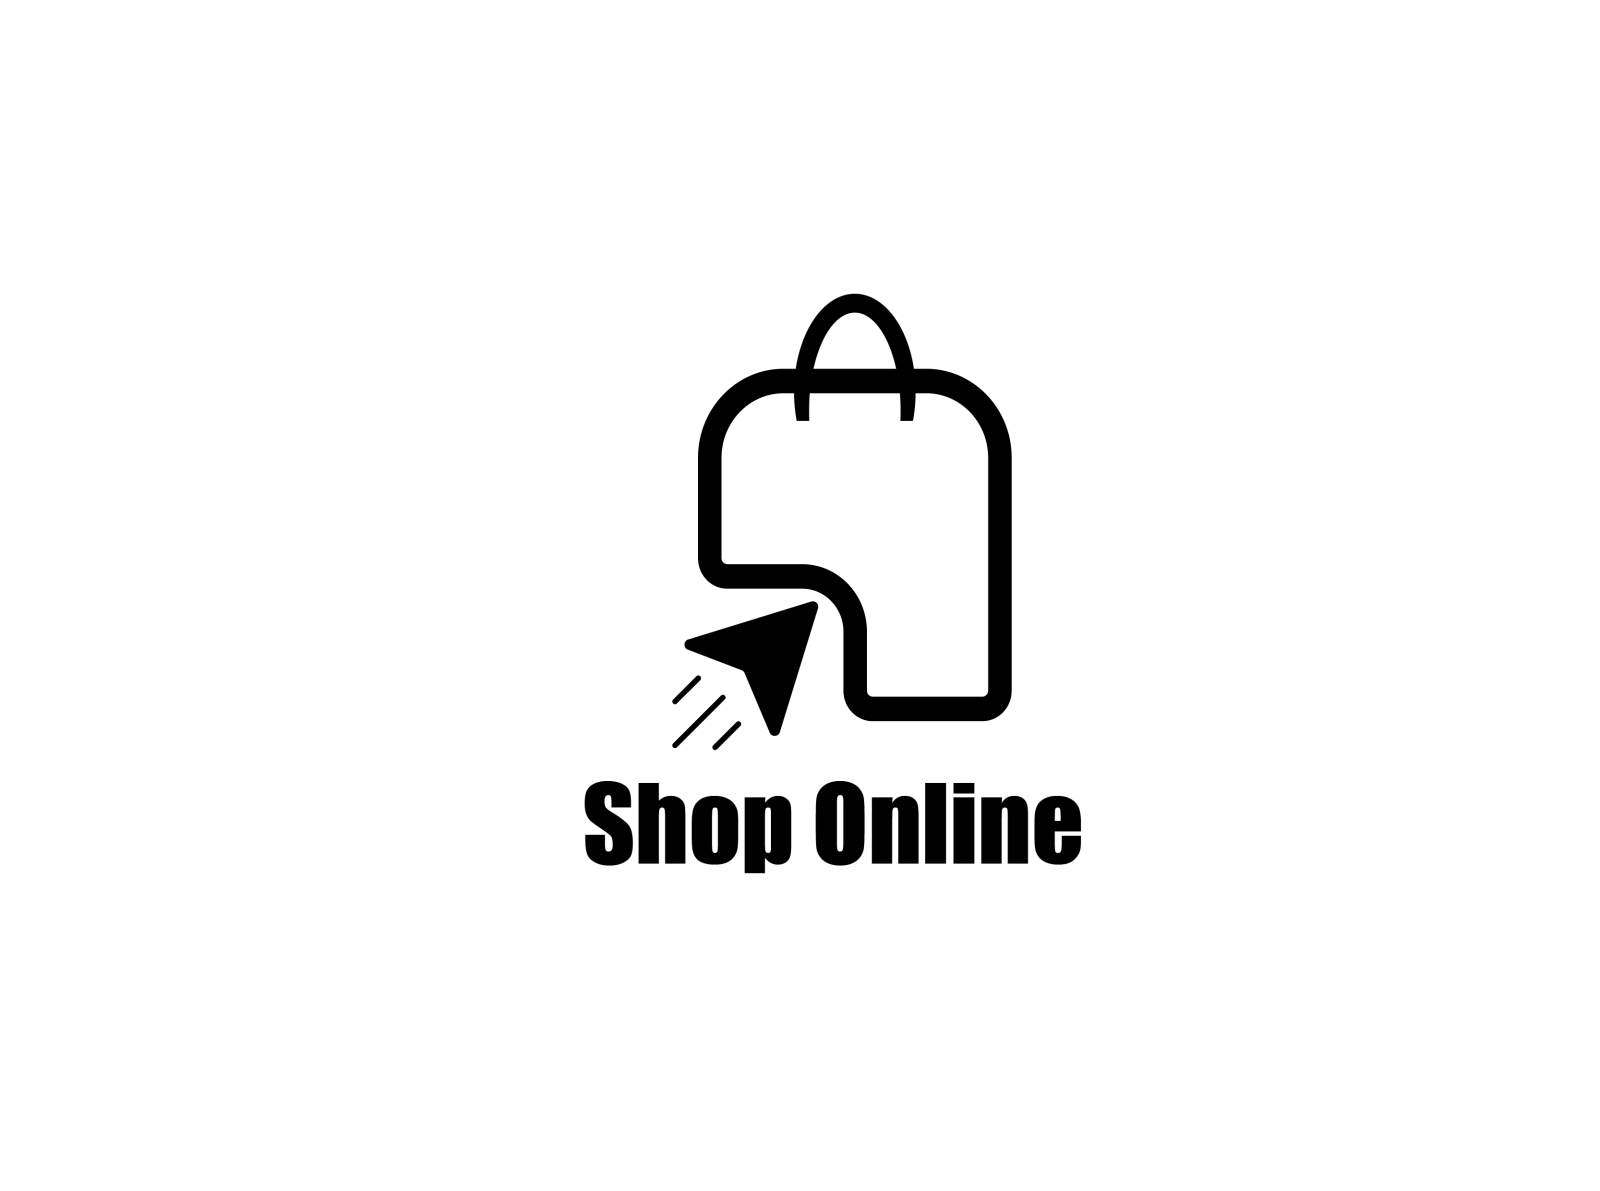 Online Shop Logo by Baetiger Art on Dribbble